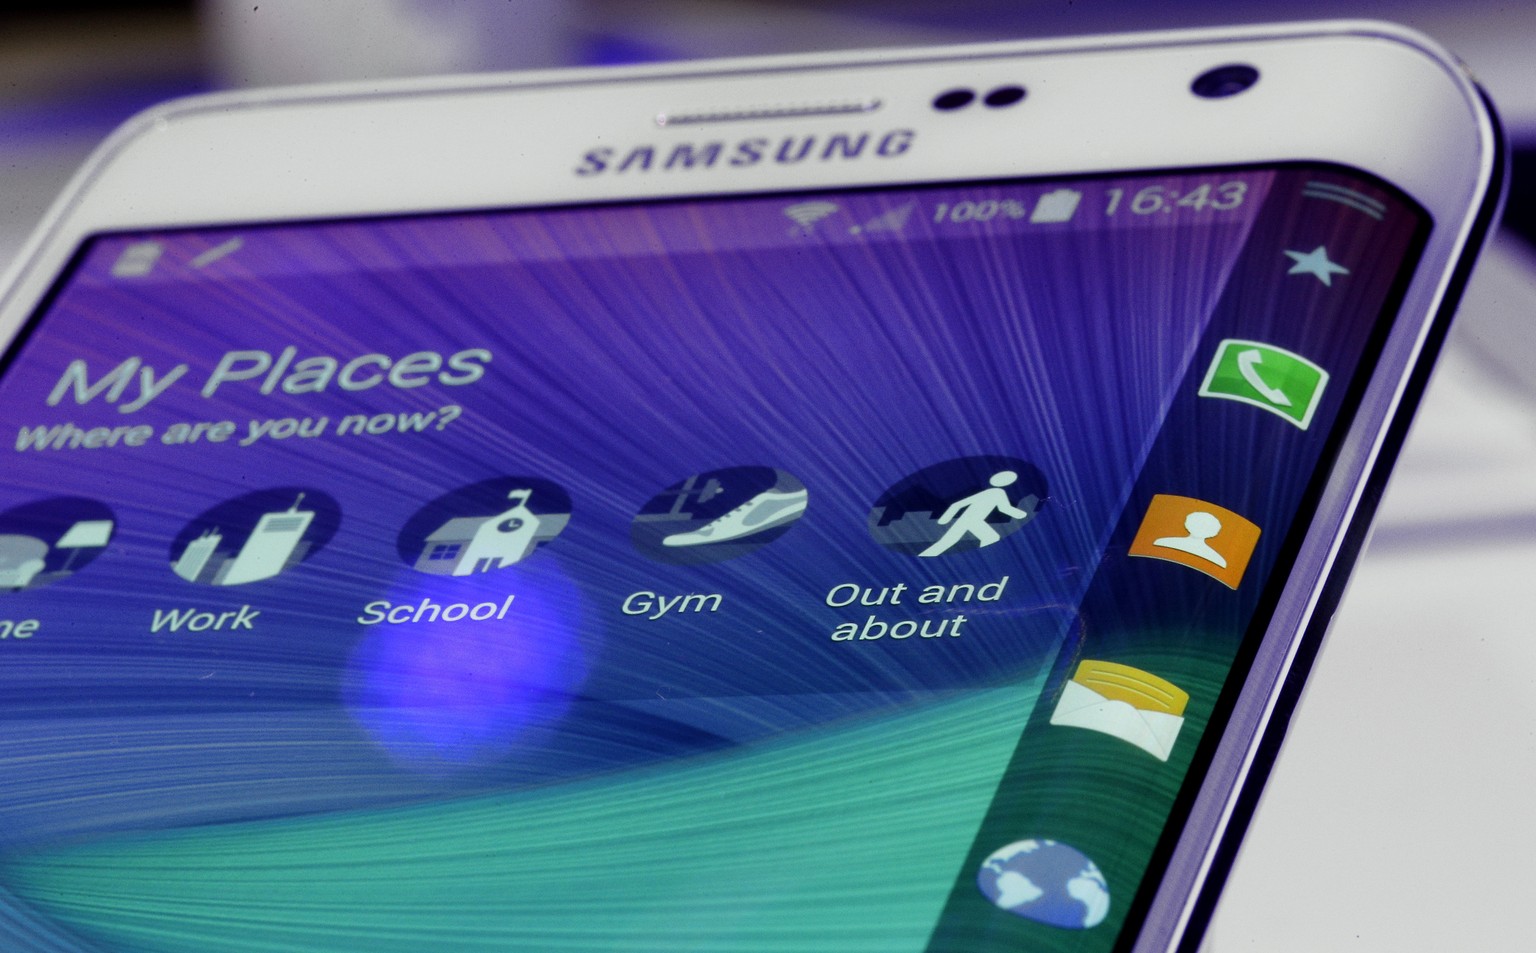 Das neue Galaxy Note Edge: Samsung nutzt den abgewinkelten Teil des Bildschirms wie ein zweites Display.&nbsp;